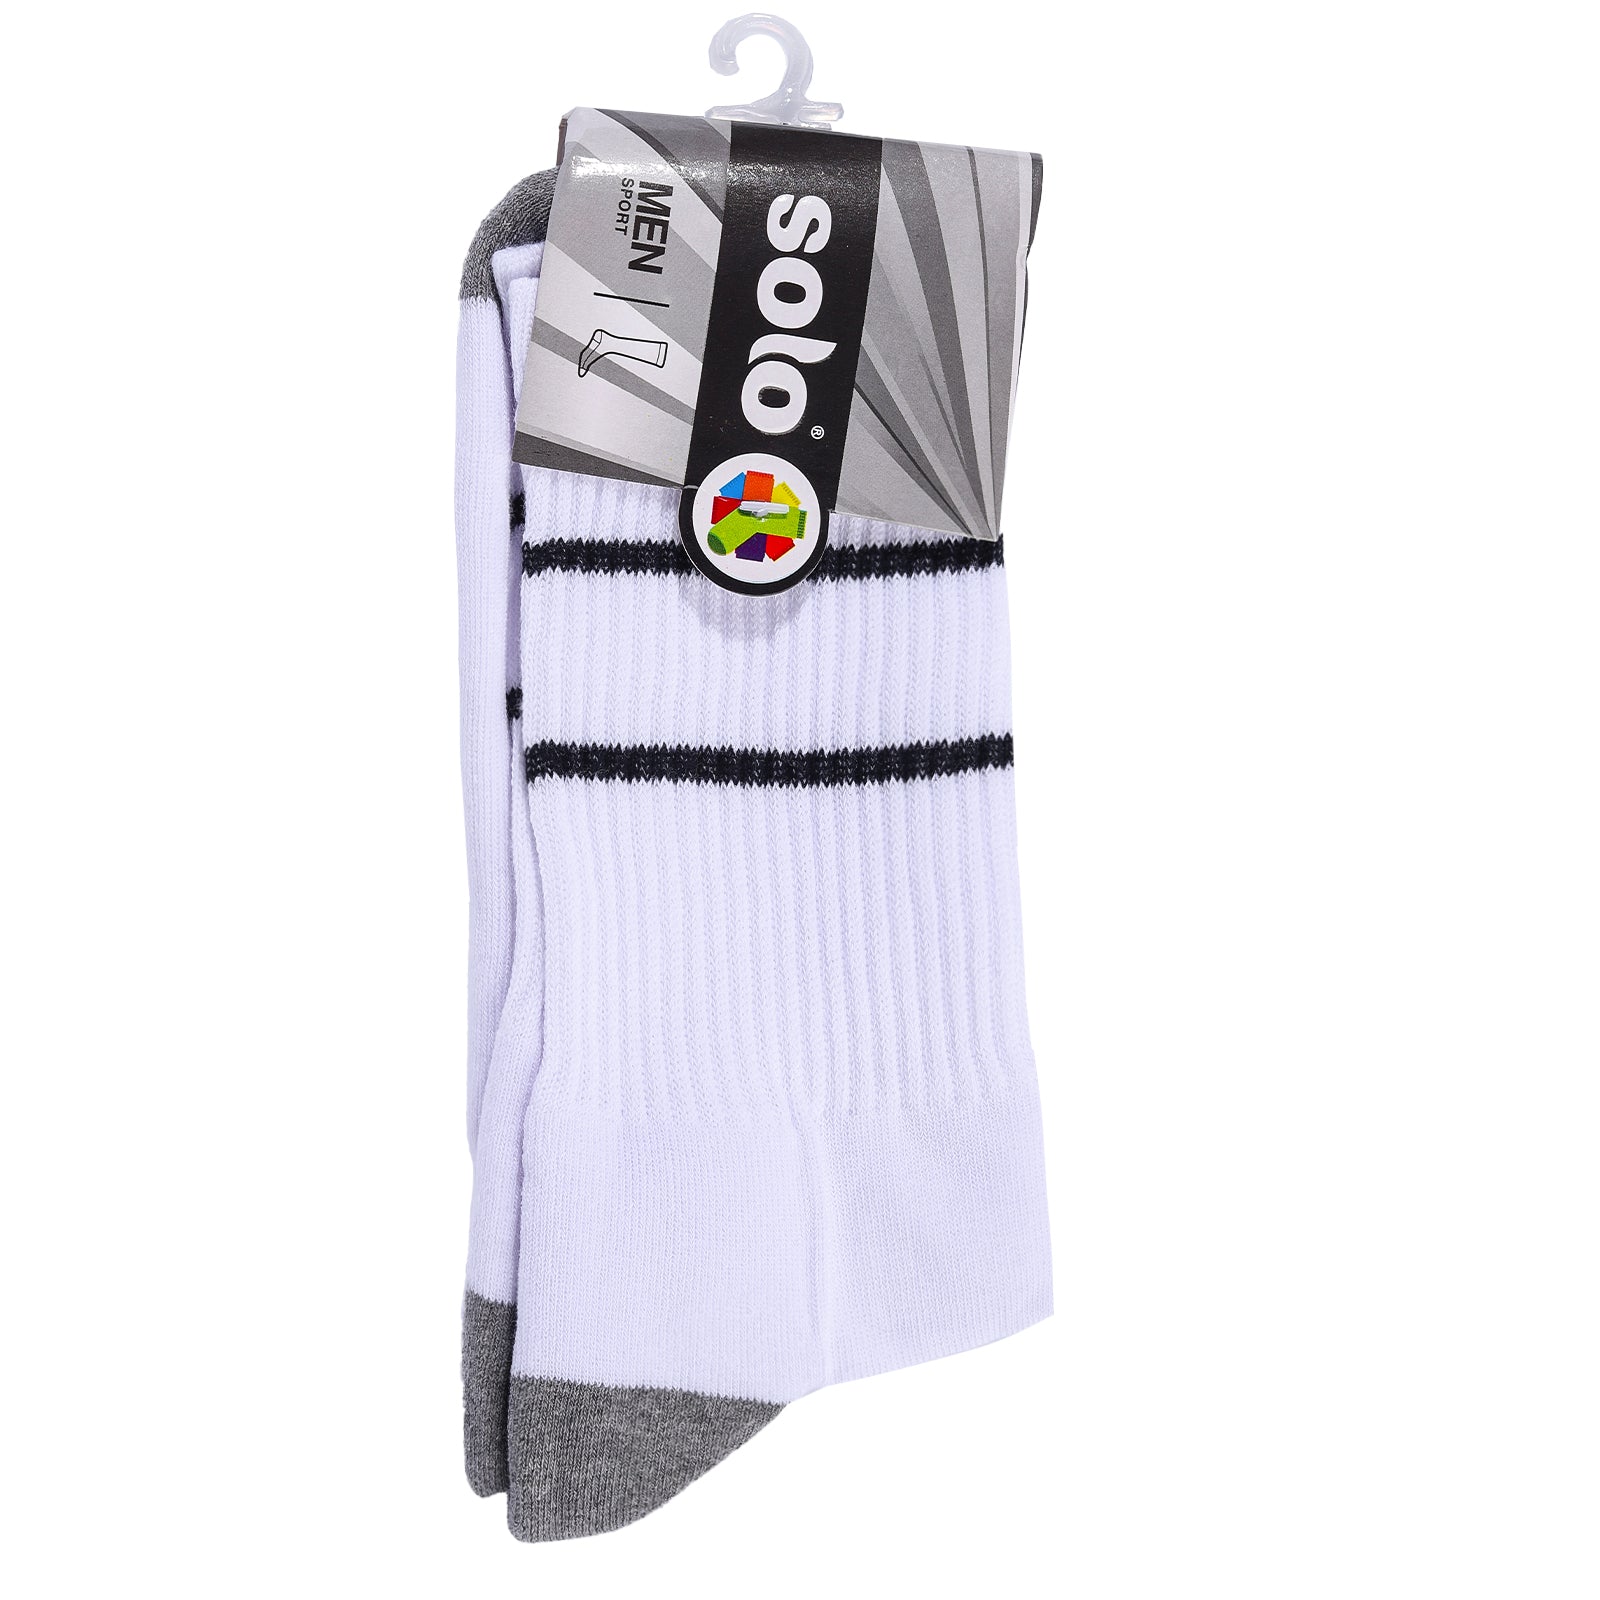 Solo Cotton Rich Long Socks White -156907